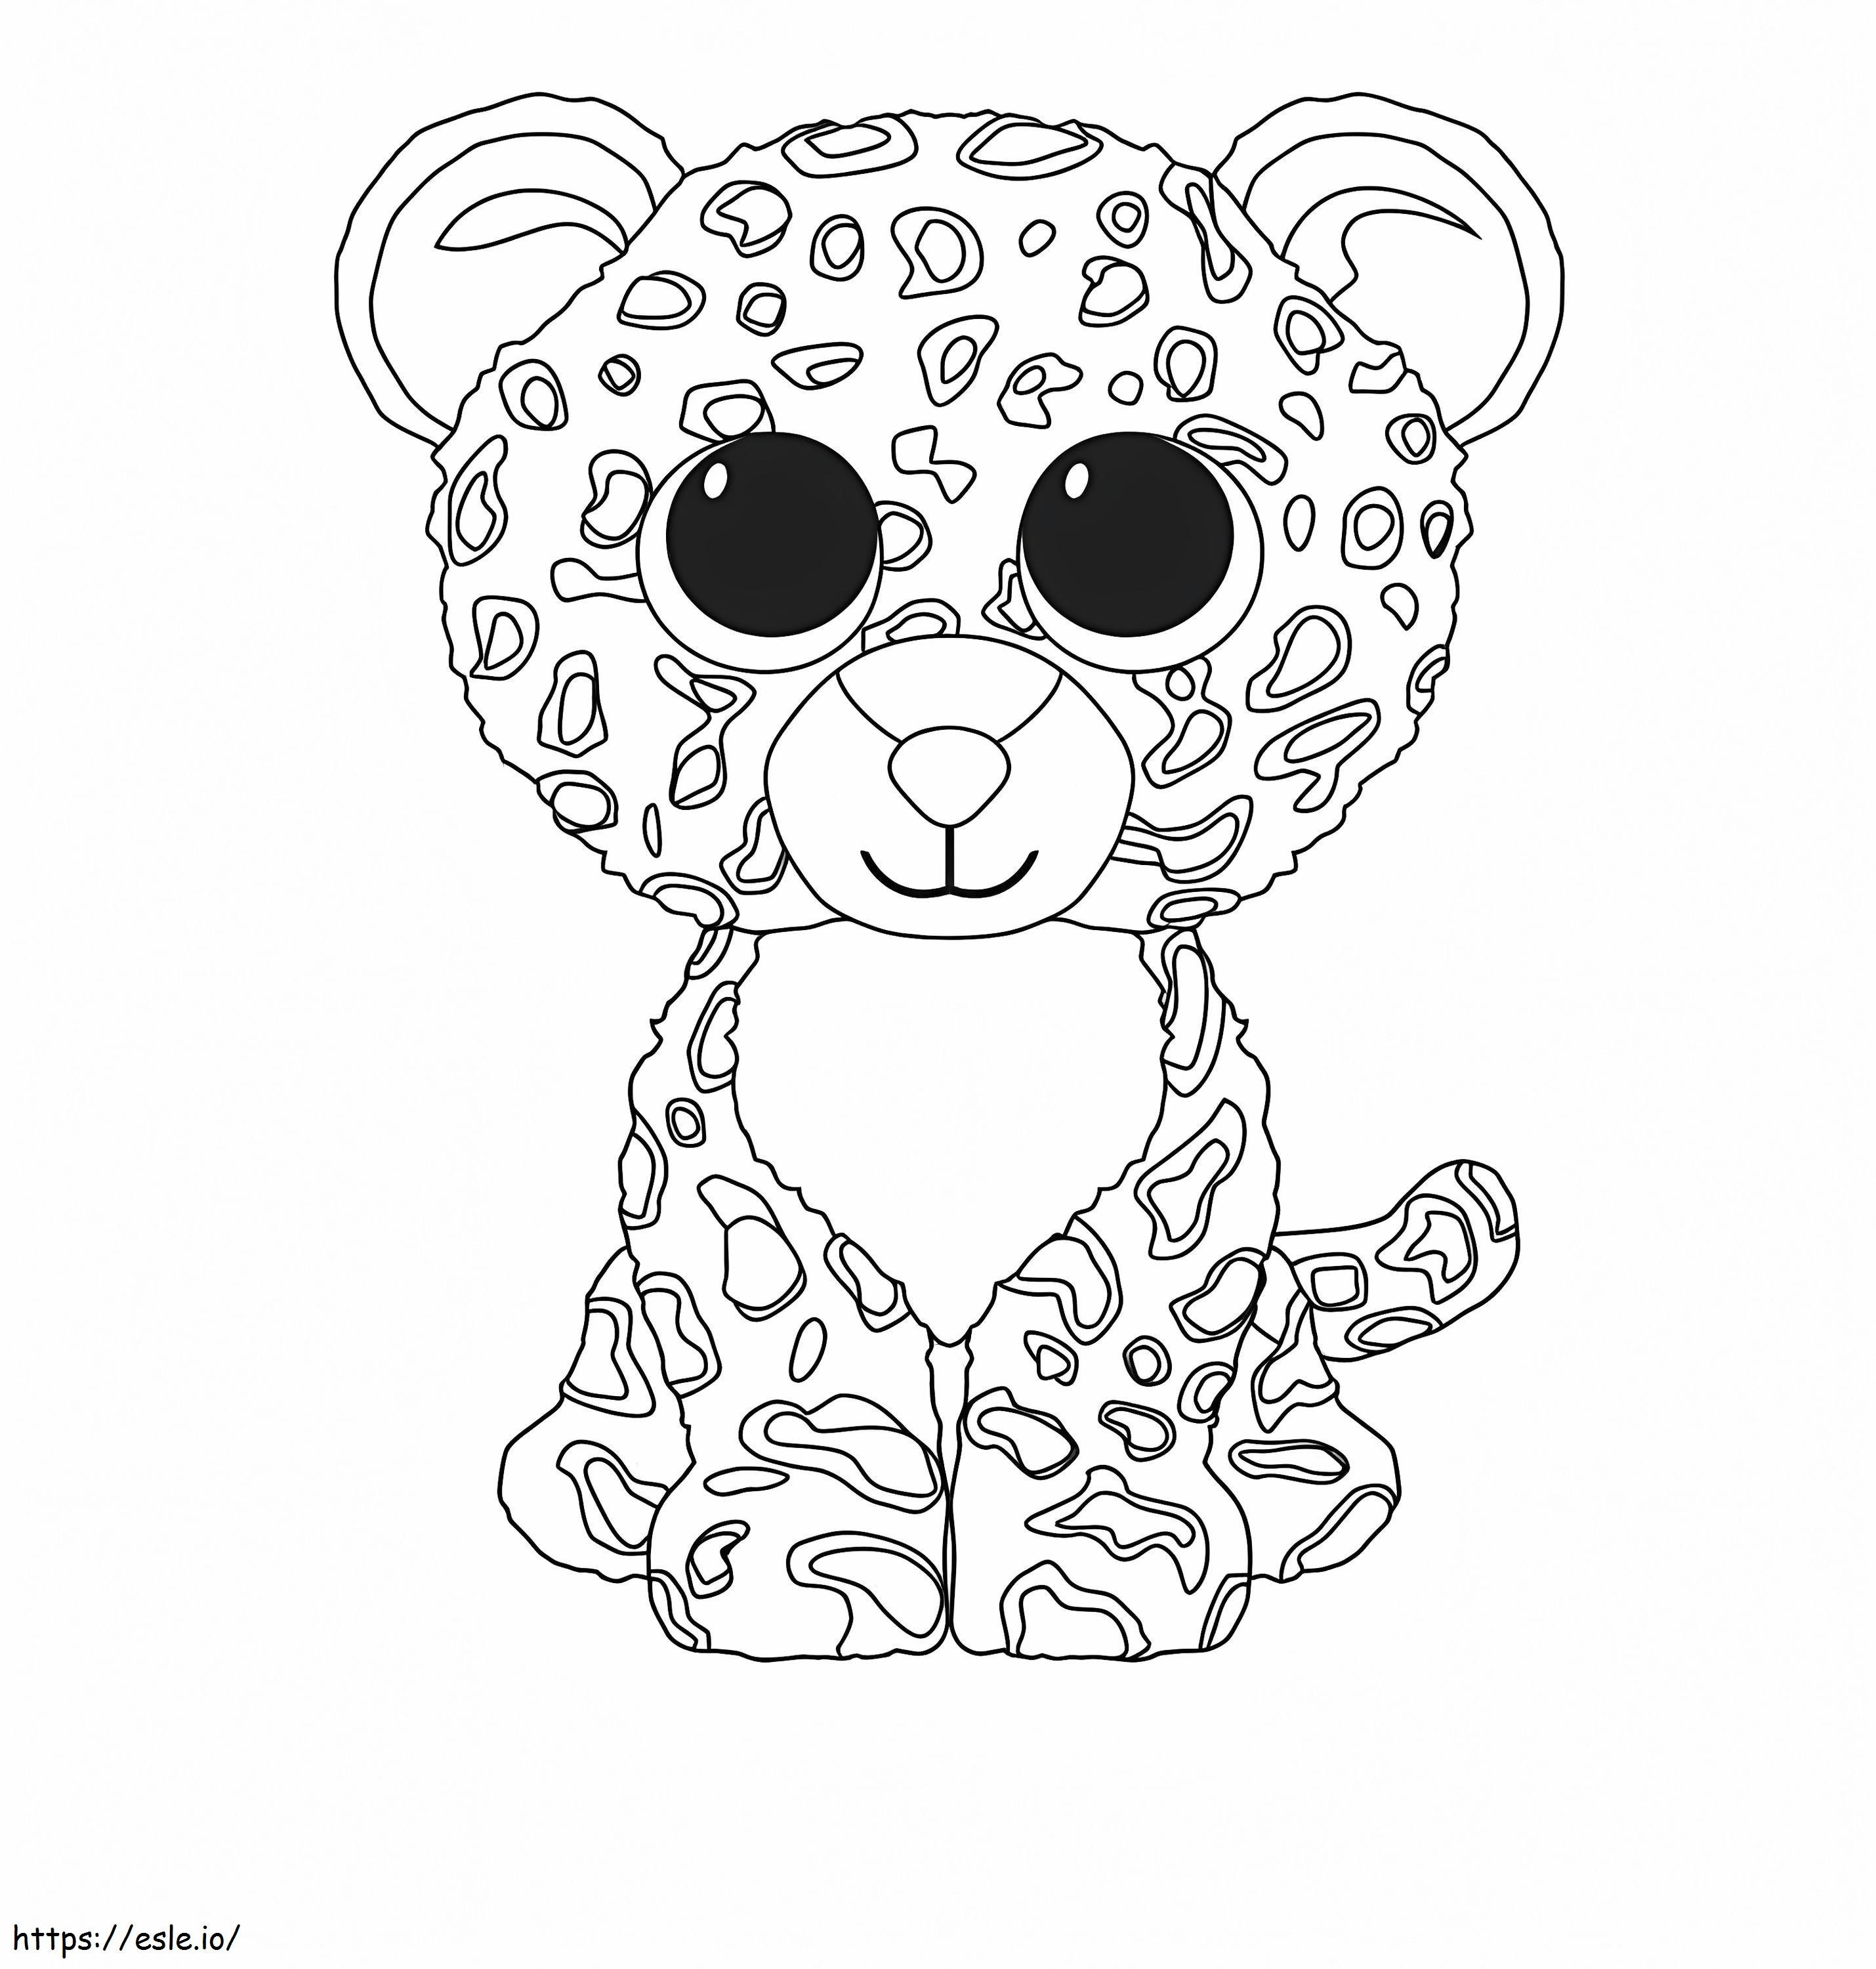 Baby-Gepard sitzend ausmalbilder